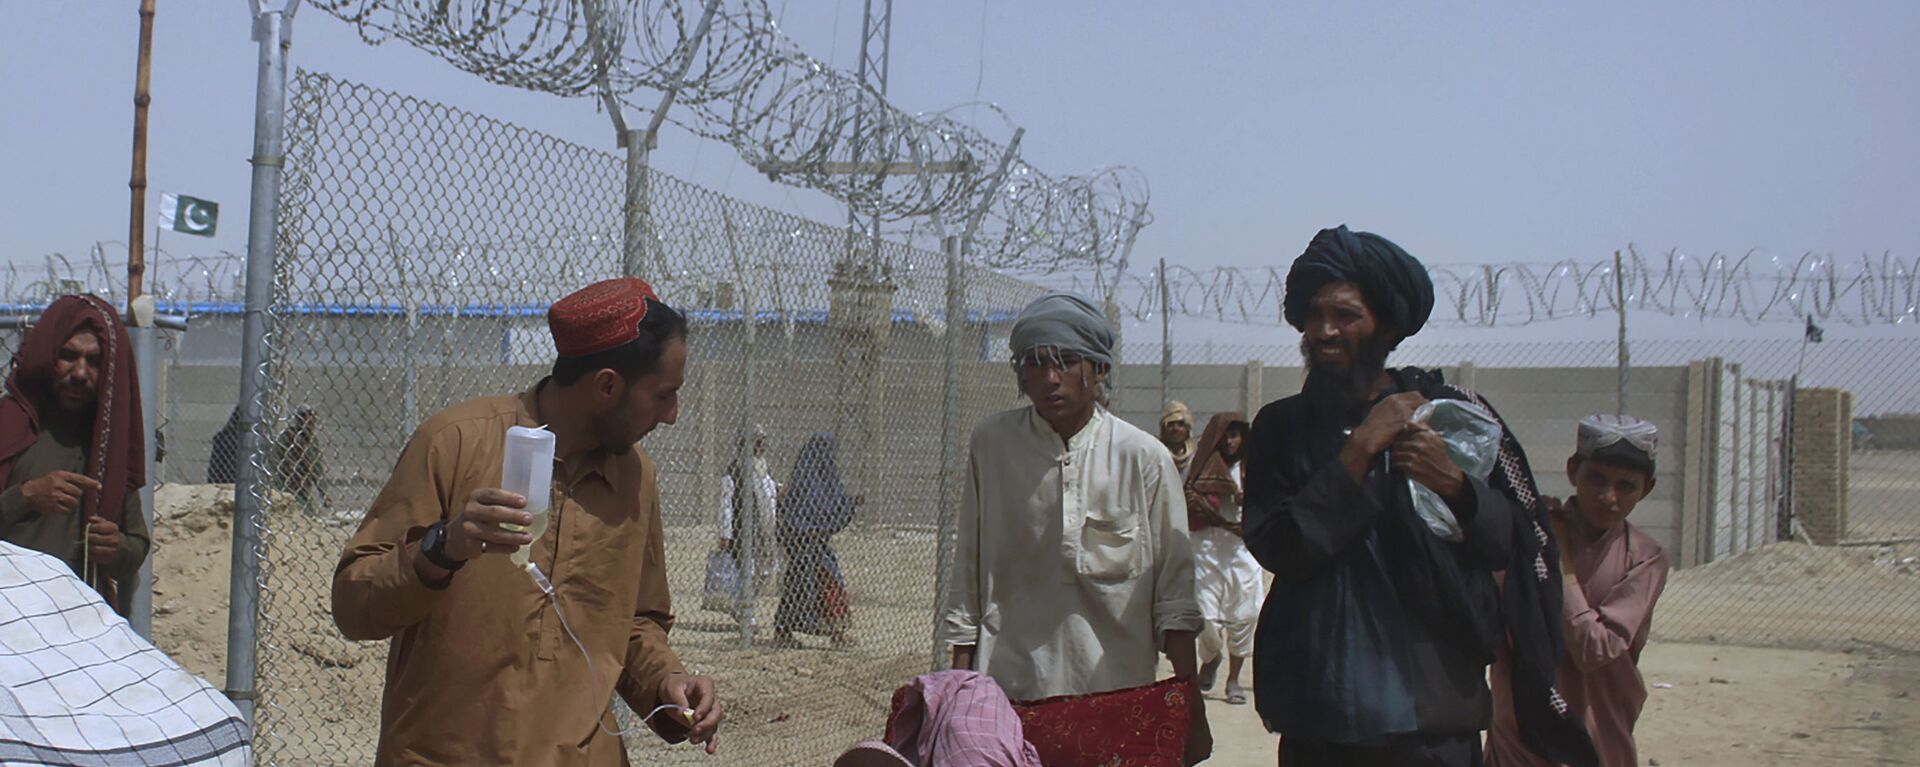 Афганские беженцы въезжают в Пакистан через пограничный переход в Чамане - Sputnik Тоҷикистон, 1920, 18.05.2022